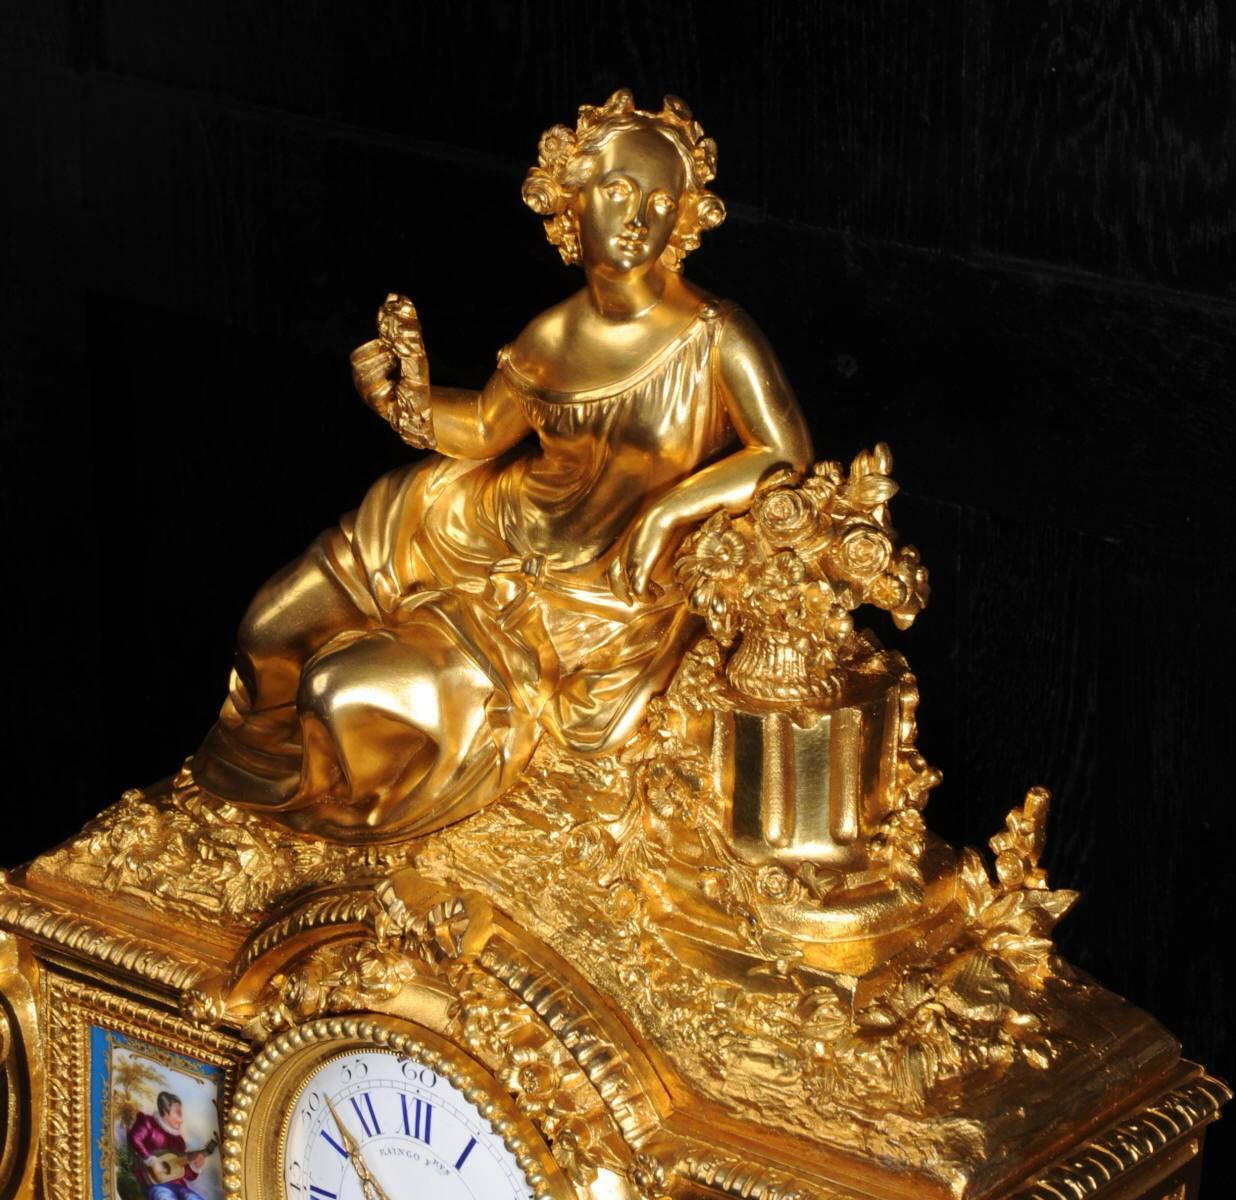 19th Century Fine Ormolu and Sèvres Porcelain Clock by Raingo Frères & Henri Picard of Paris